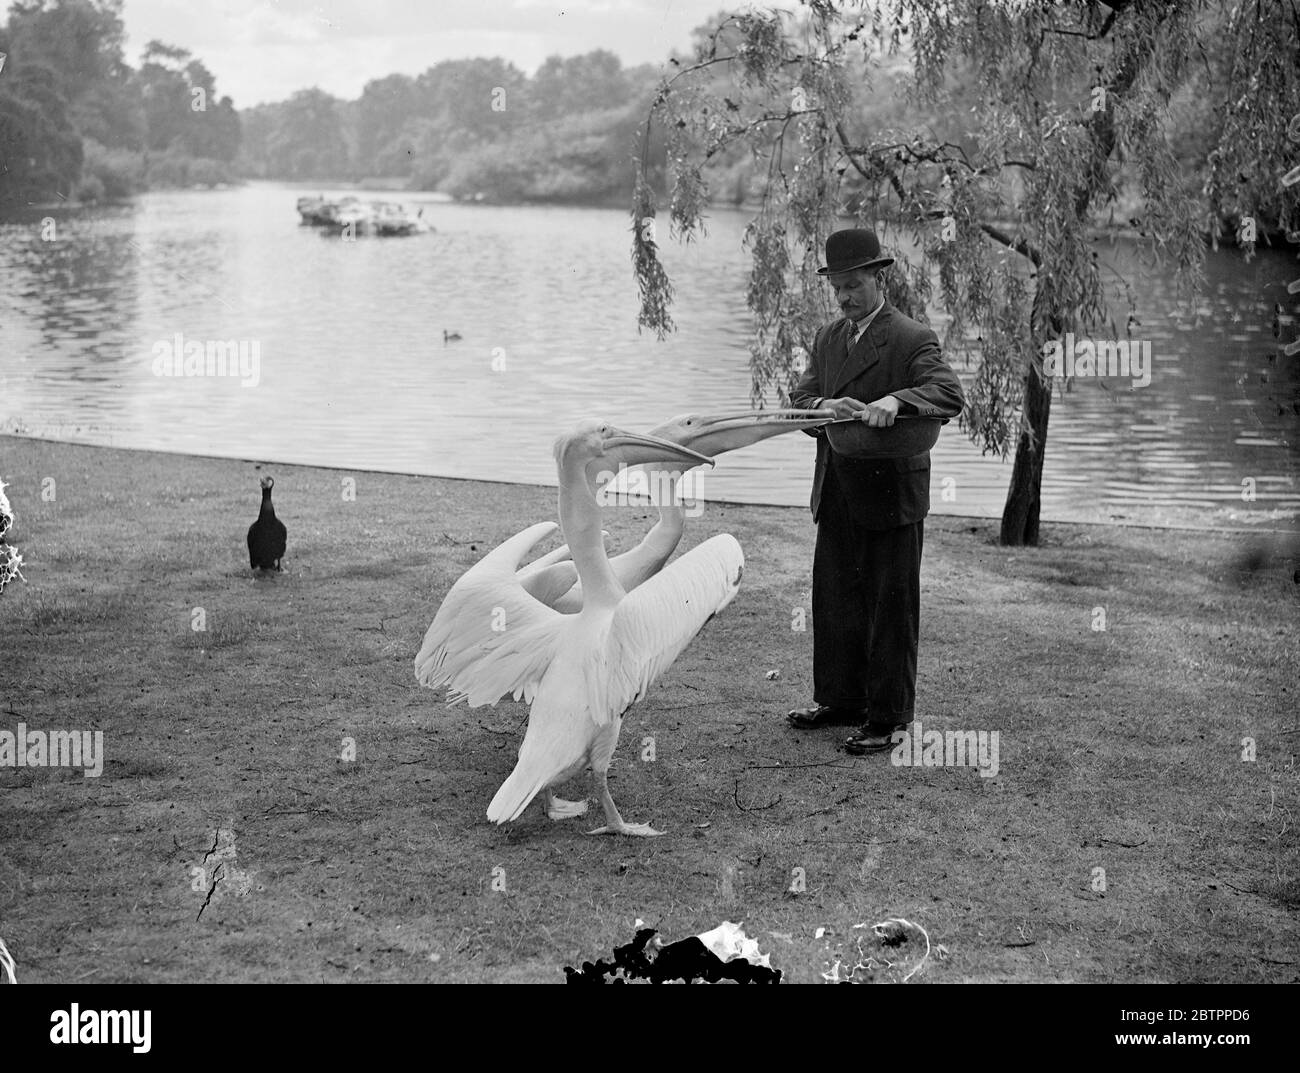 Pelican war pikiert. Ein ungeduldiger Pelikan schlägt wütend seine Flügel, als sein Kumpel im St James Park London die erste Fischration am See erhält. Juli 1938 Stockfoto